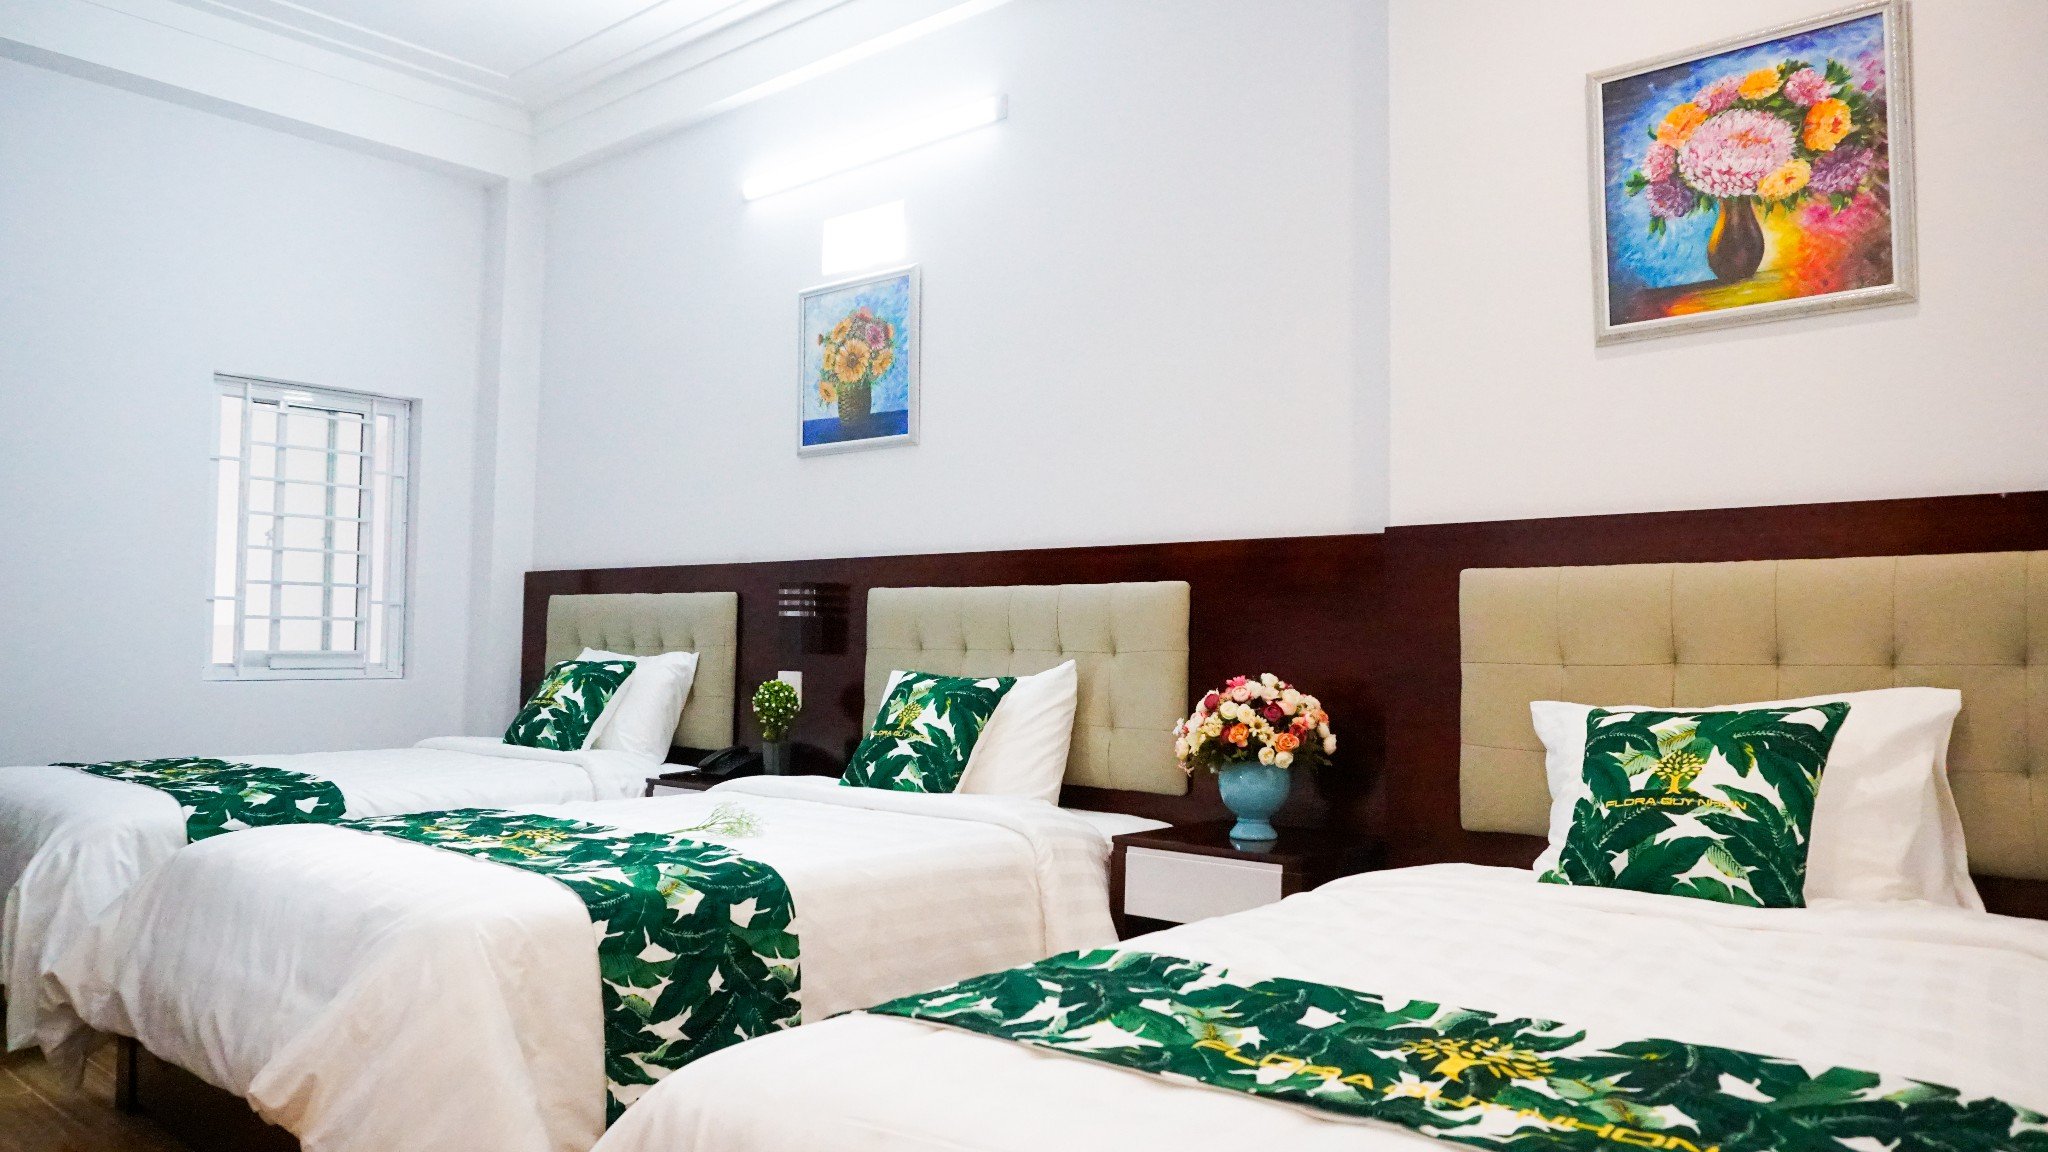  Combo du lịch Quy Nhơn 3N2Đ khách sạn Flora Hotel 3 sao